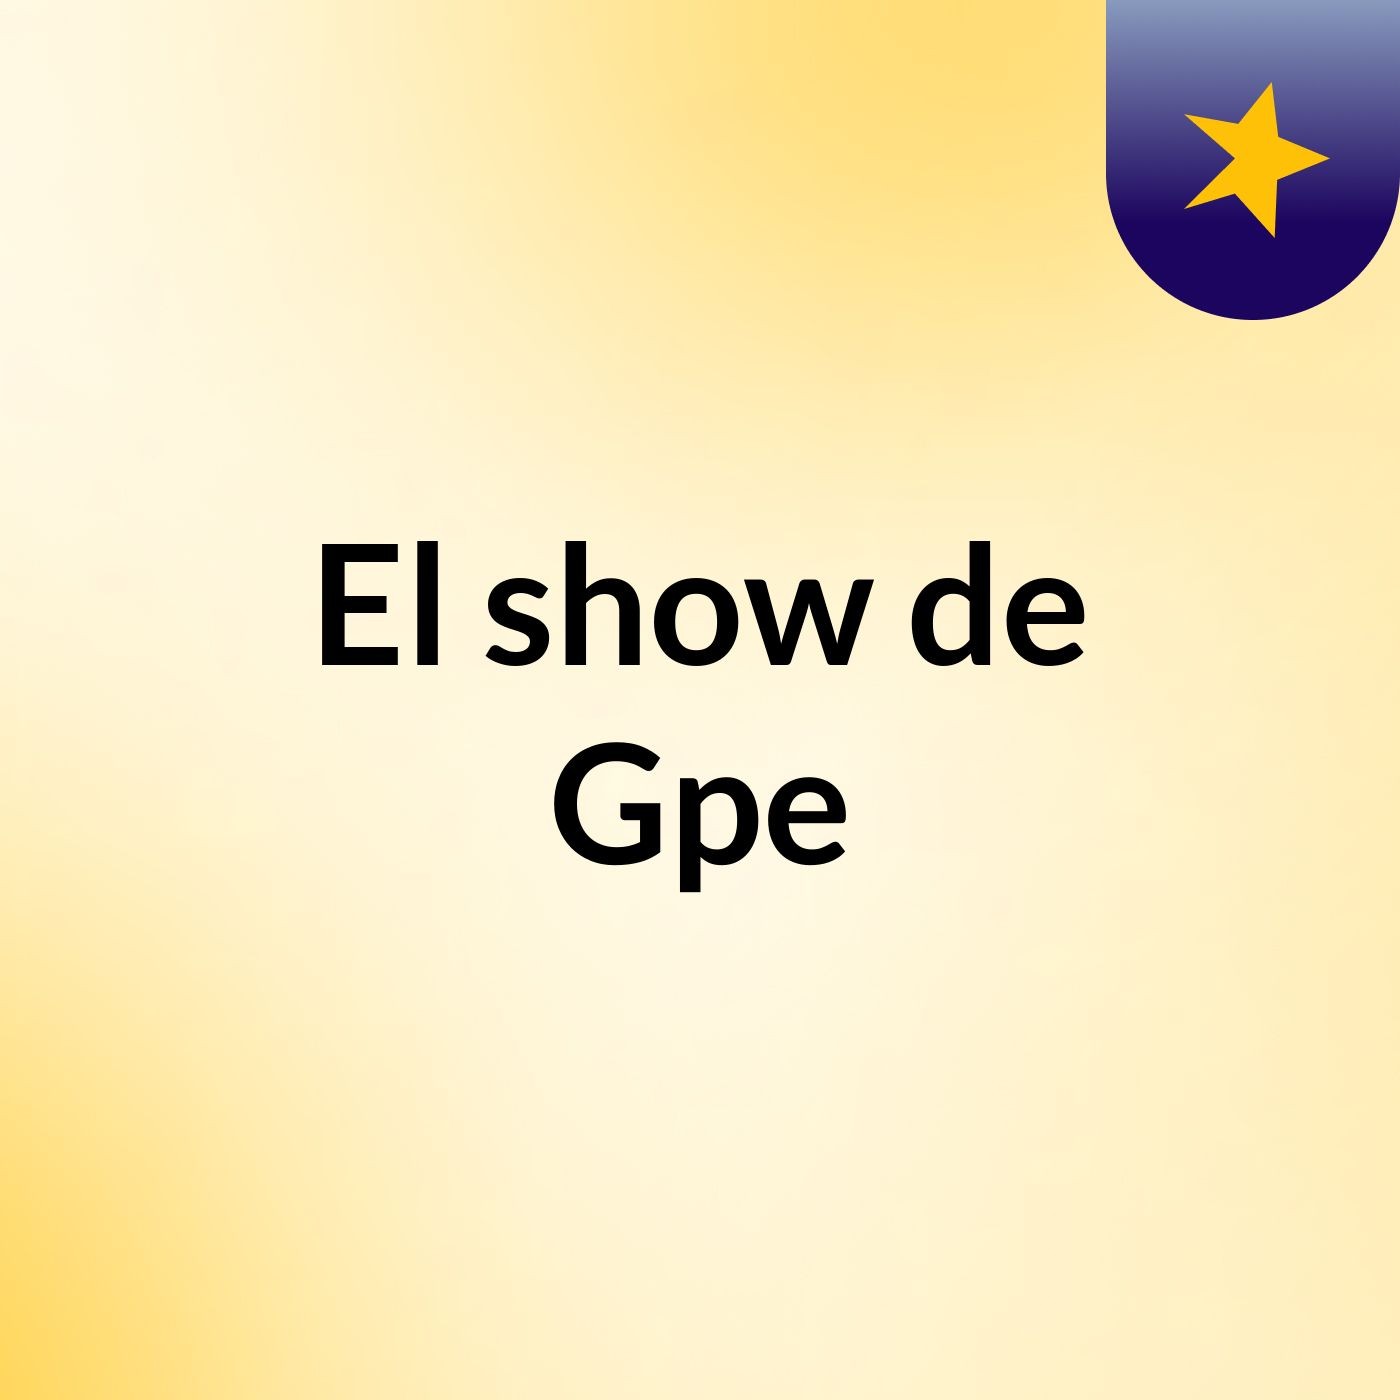 El show de Gpe